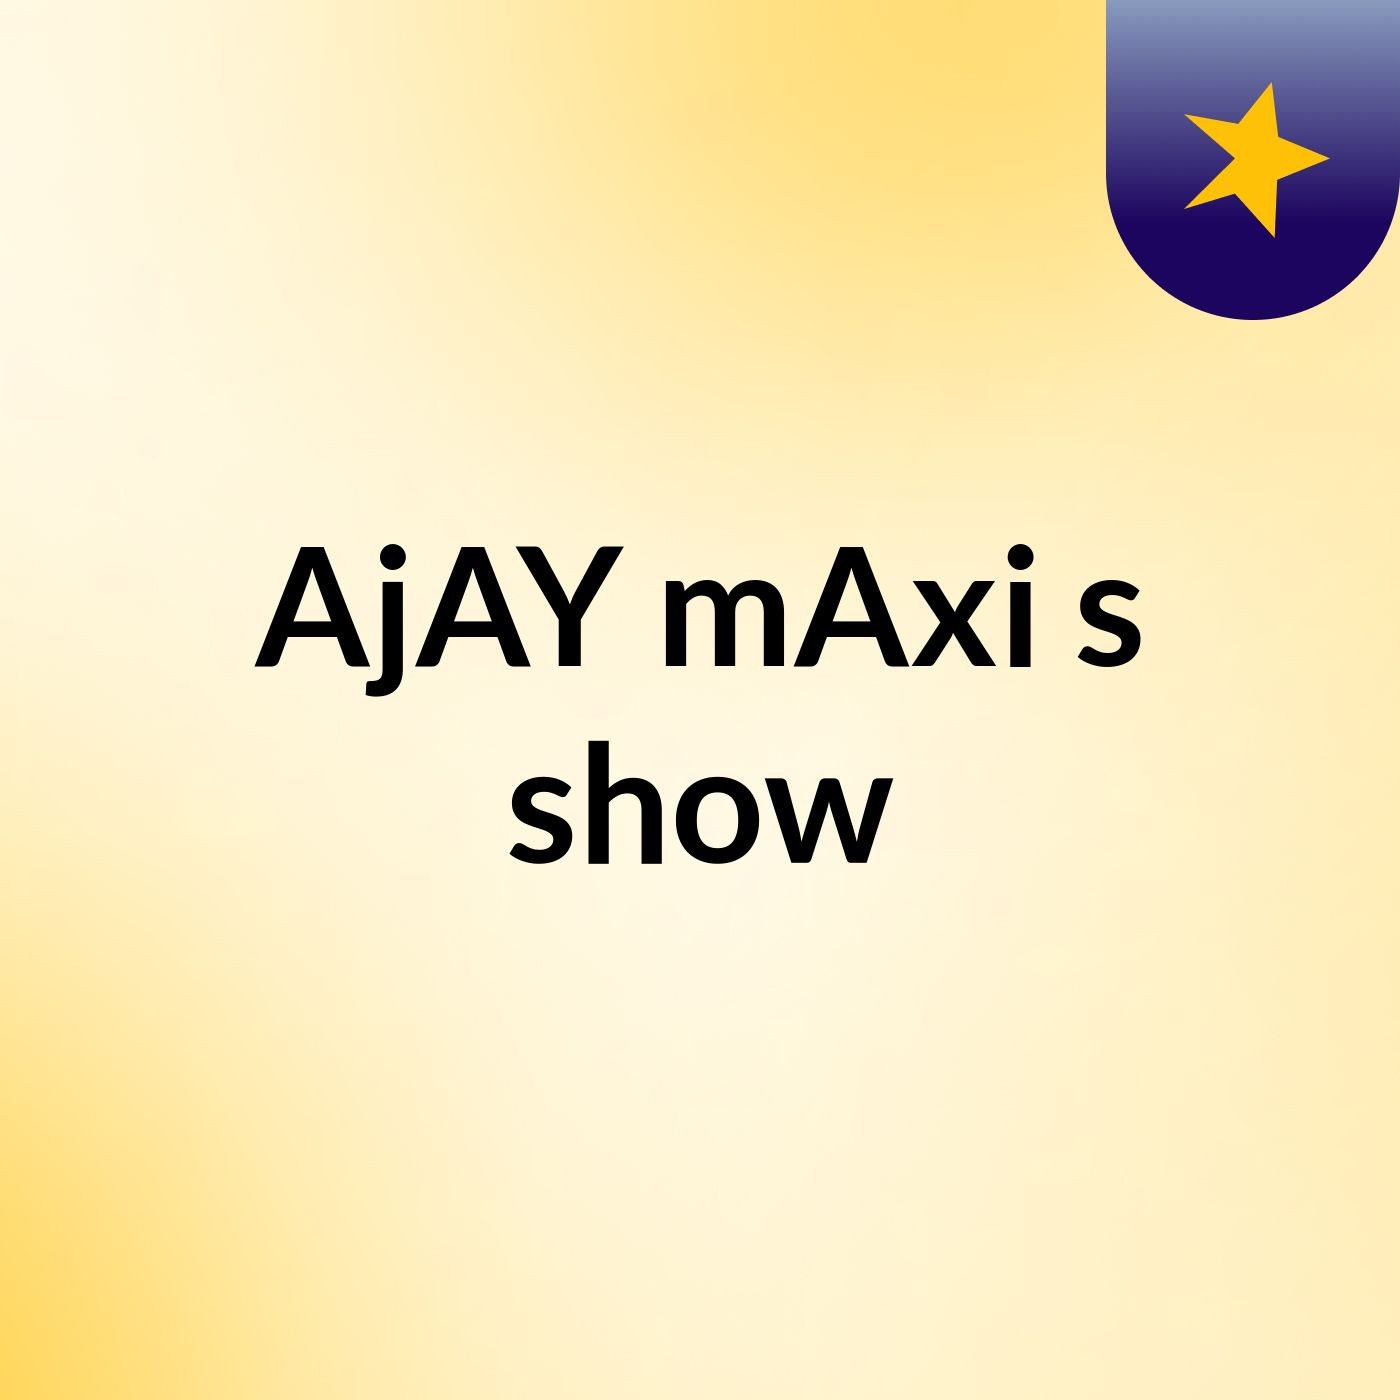 AjAY mAxi's show